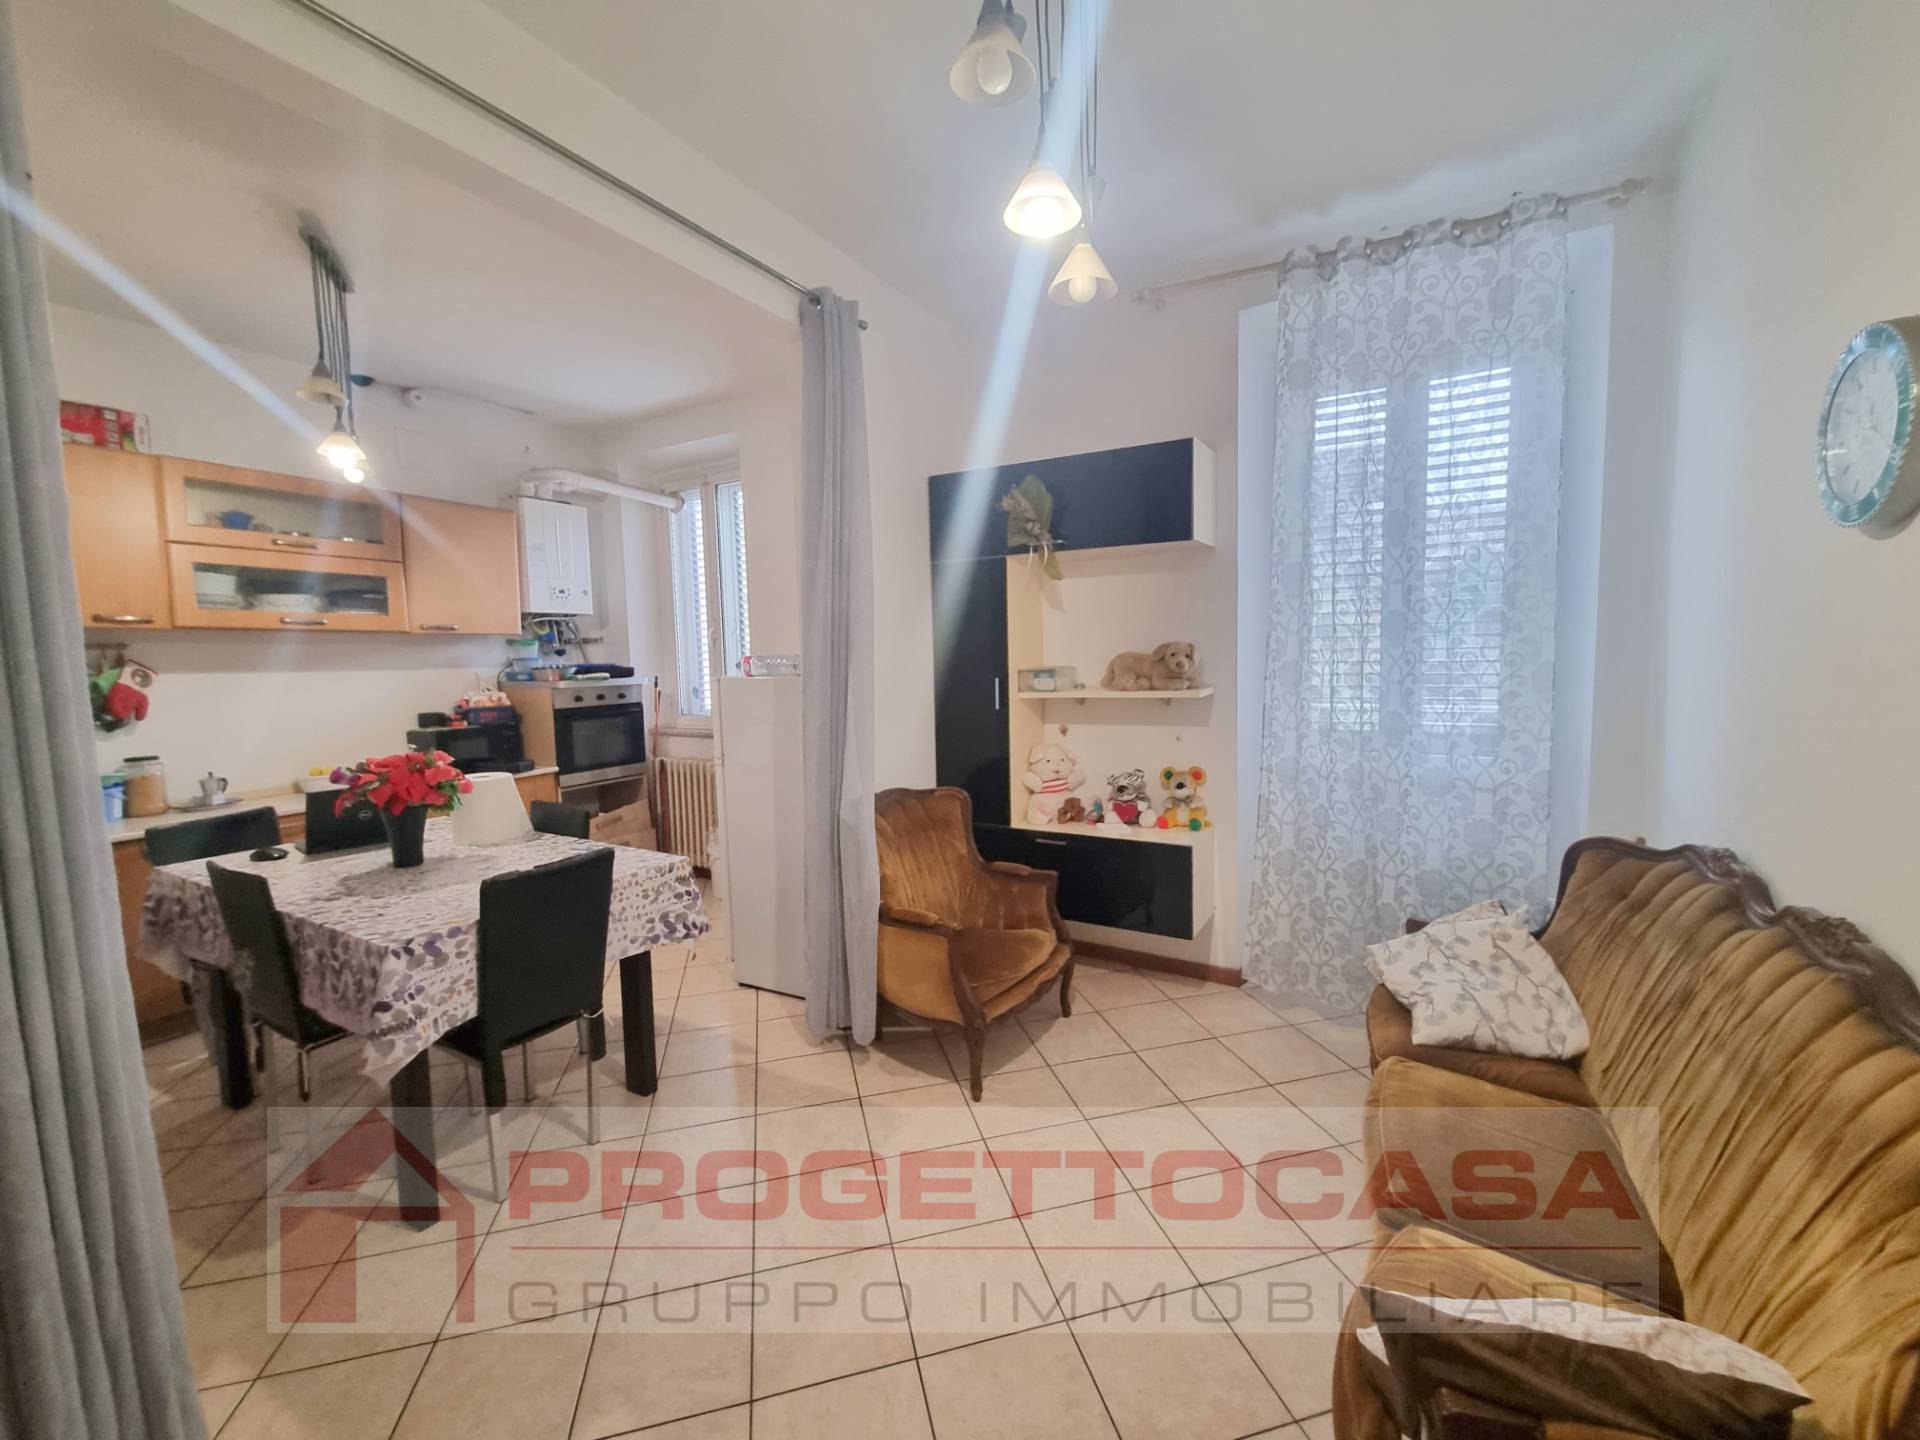 Appartamento in vendita a San Benedetto del Tronto, 3 locali, zona Località: CENTRO, prezzo € 165.000 | PortaleAgenzieImmobiliari.it